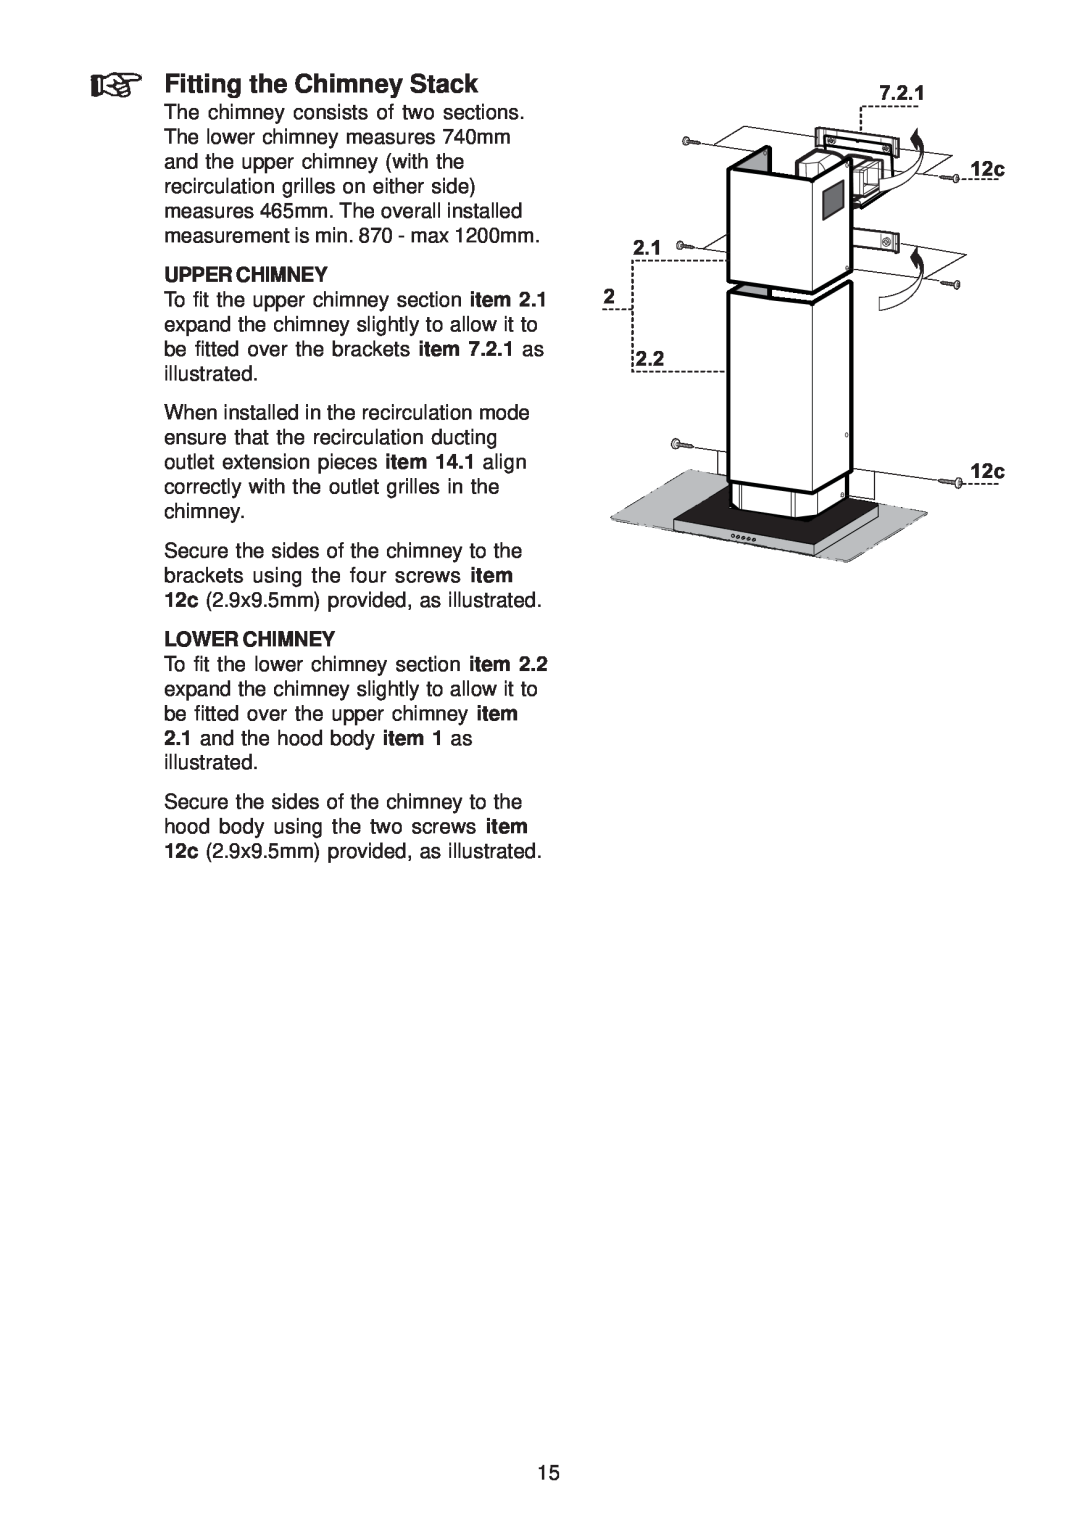 Zanussi ZHC 950 manual Fitting the Chimney Stack, Upper Chimney, Lower Chimney, 7.2.1 12c 12c 